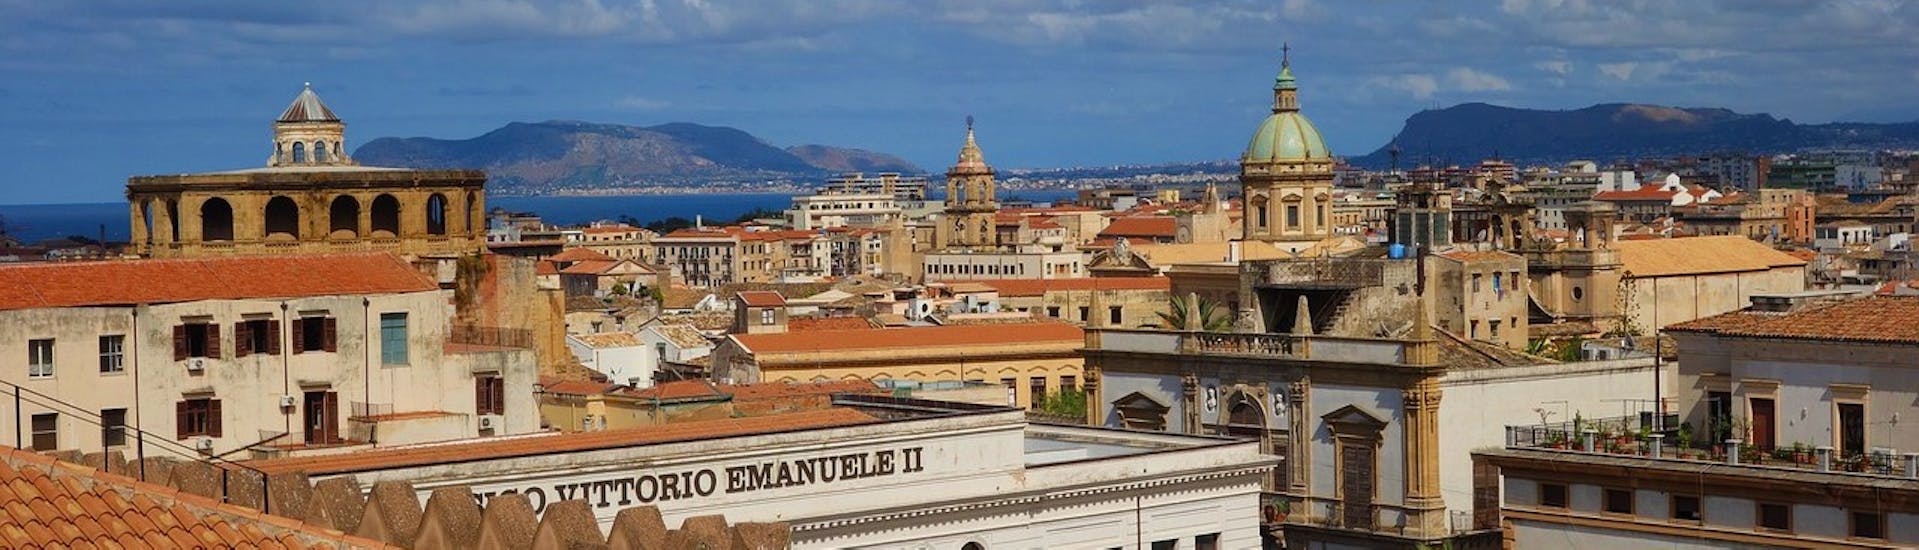 El encantador panorama de Palermo desde arriba para visitar durante un viaje en yate privado de Cefalù a Palermo con un paseo en un Ape Calessino y almuerzo con Margy Charter.